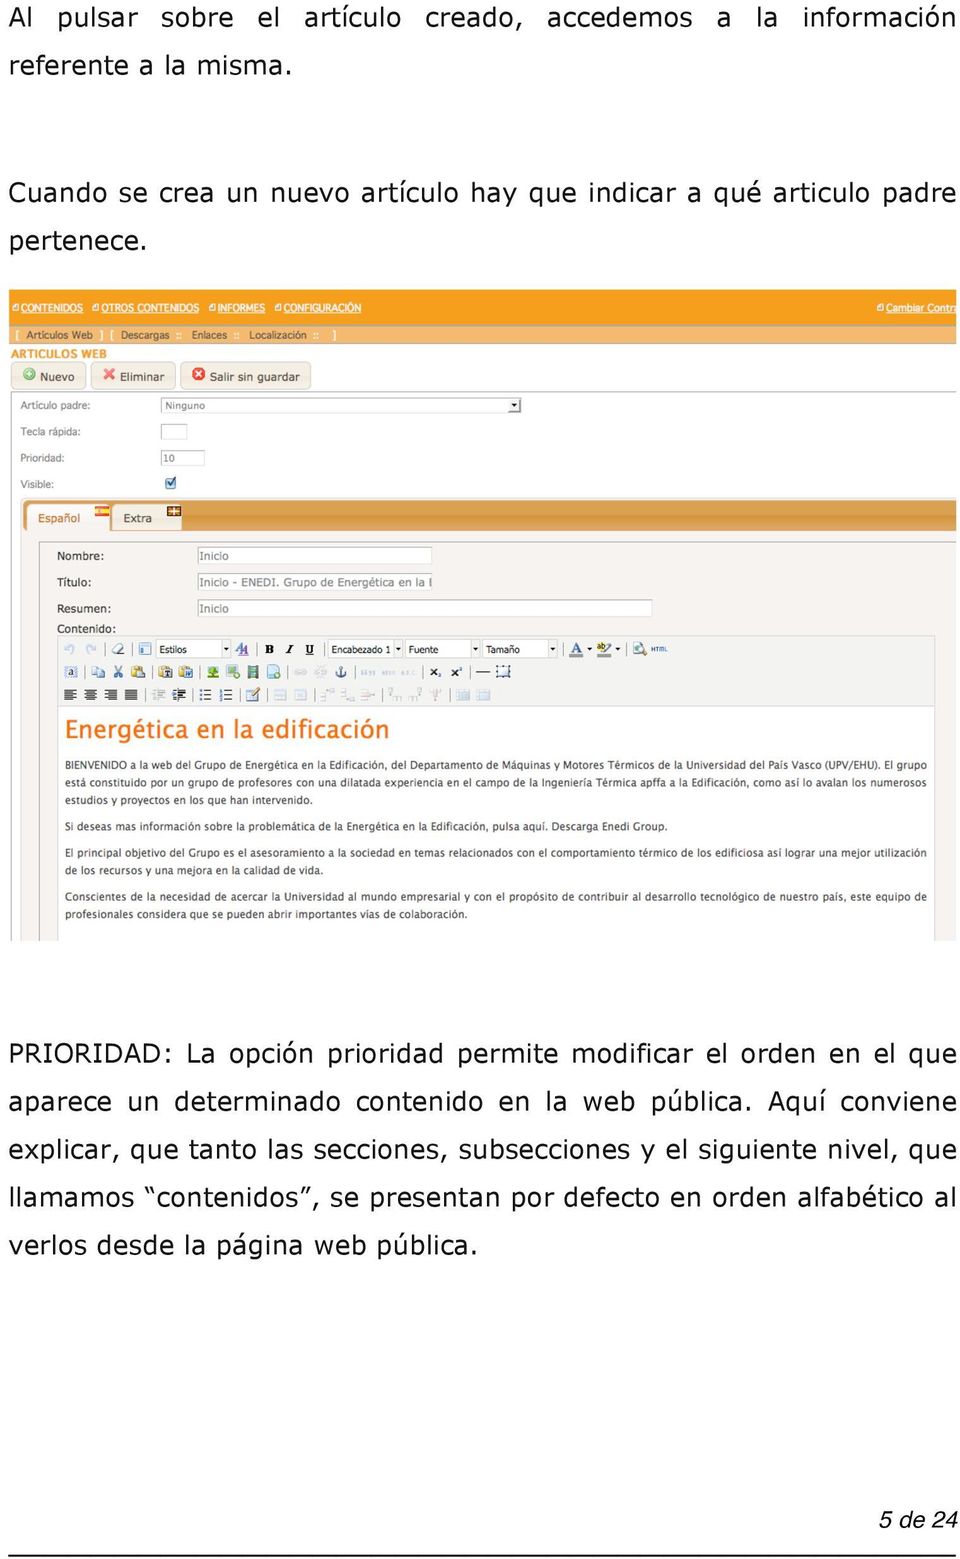 PRIORIDAD: La opción prioridad permite modificar el orden en el que aparece un determinado contenido en la web pública.